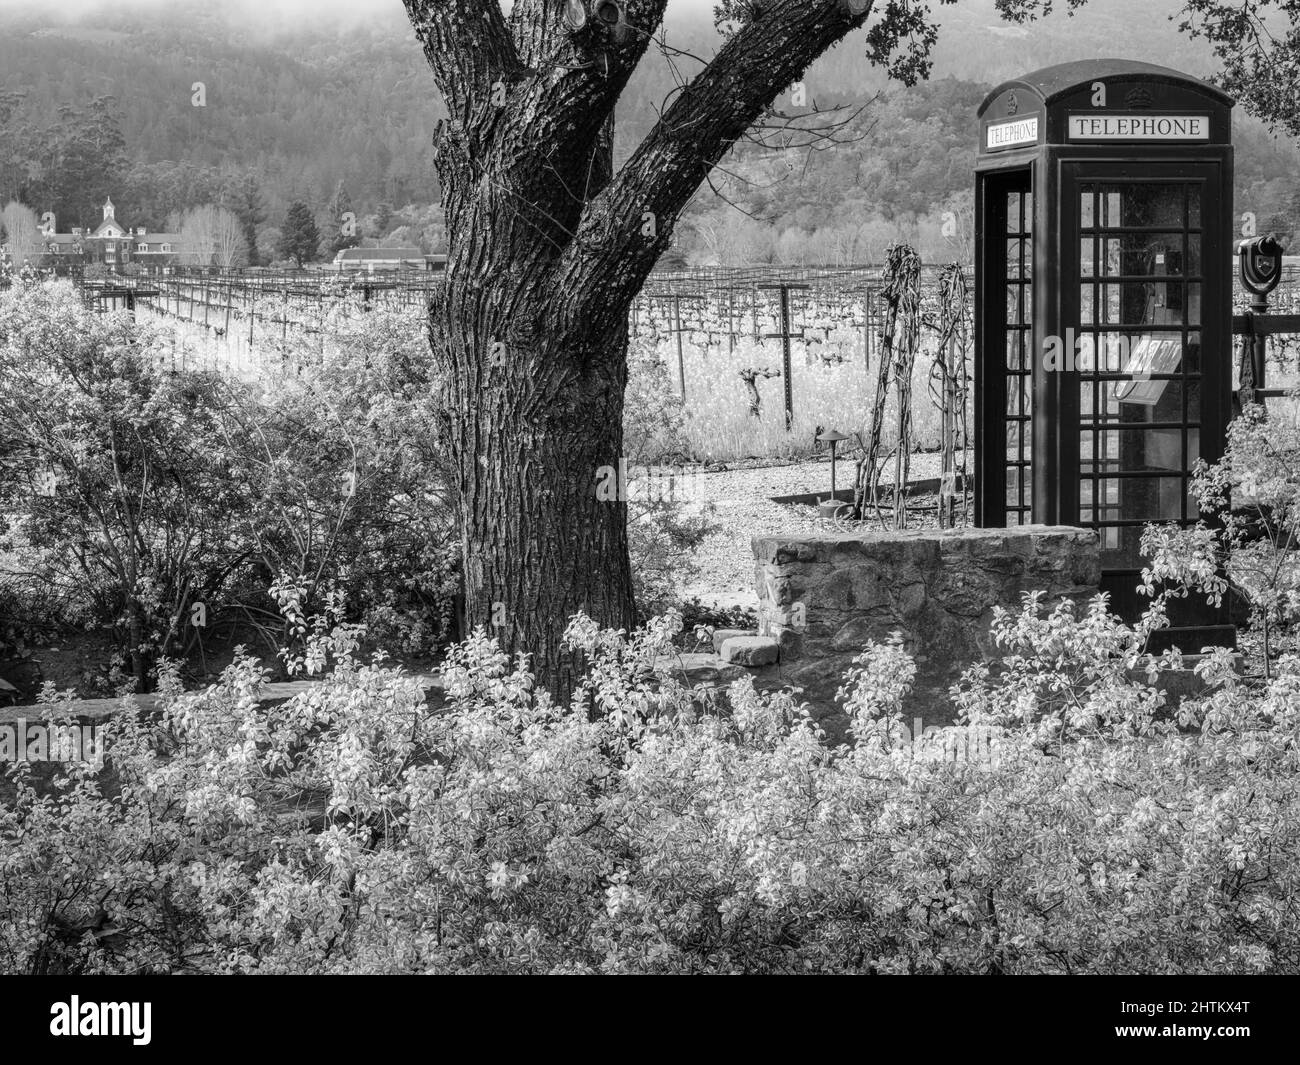 Un cadre pittoresque de vignoble avec un téléphone à l'ancienne, Napa Valley, Californie Banque D'Images